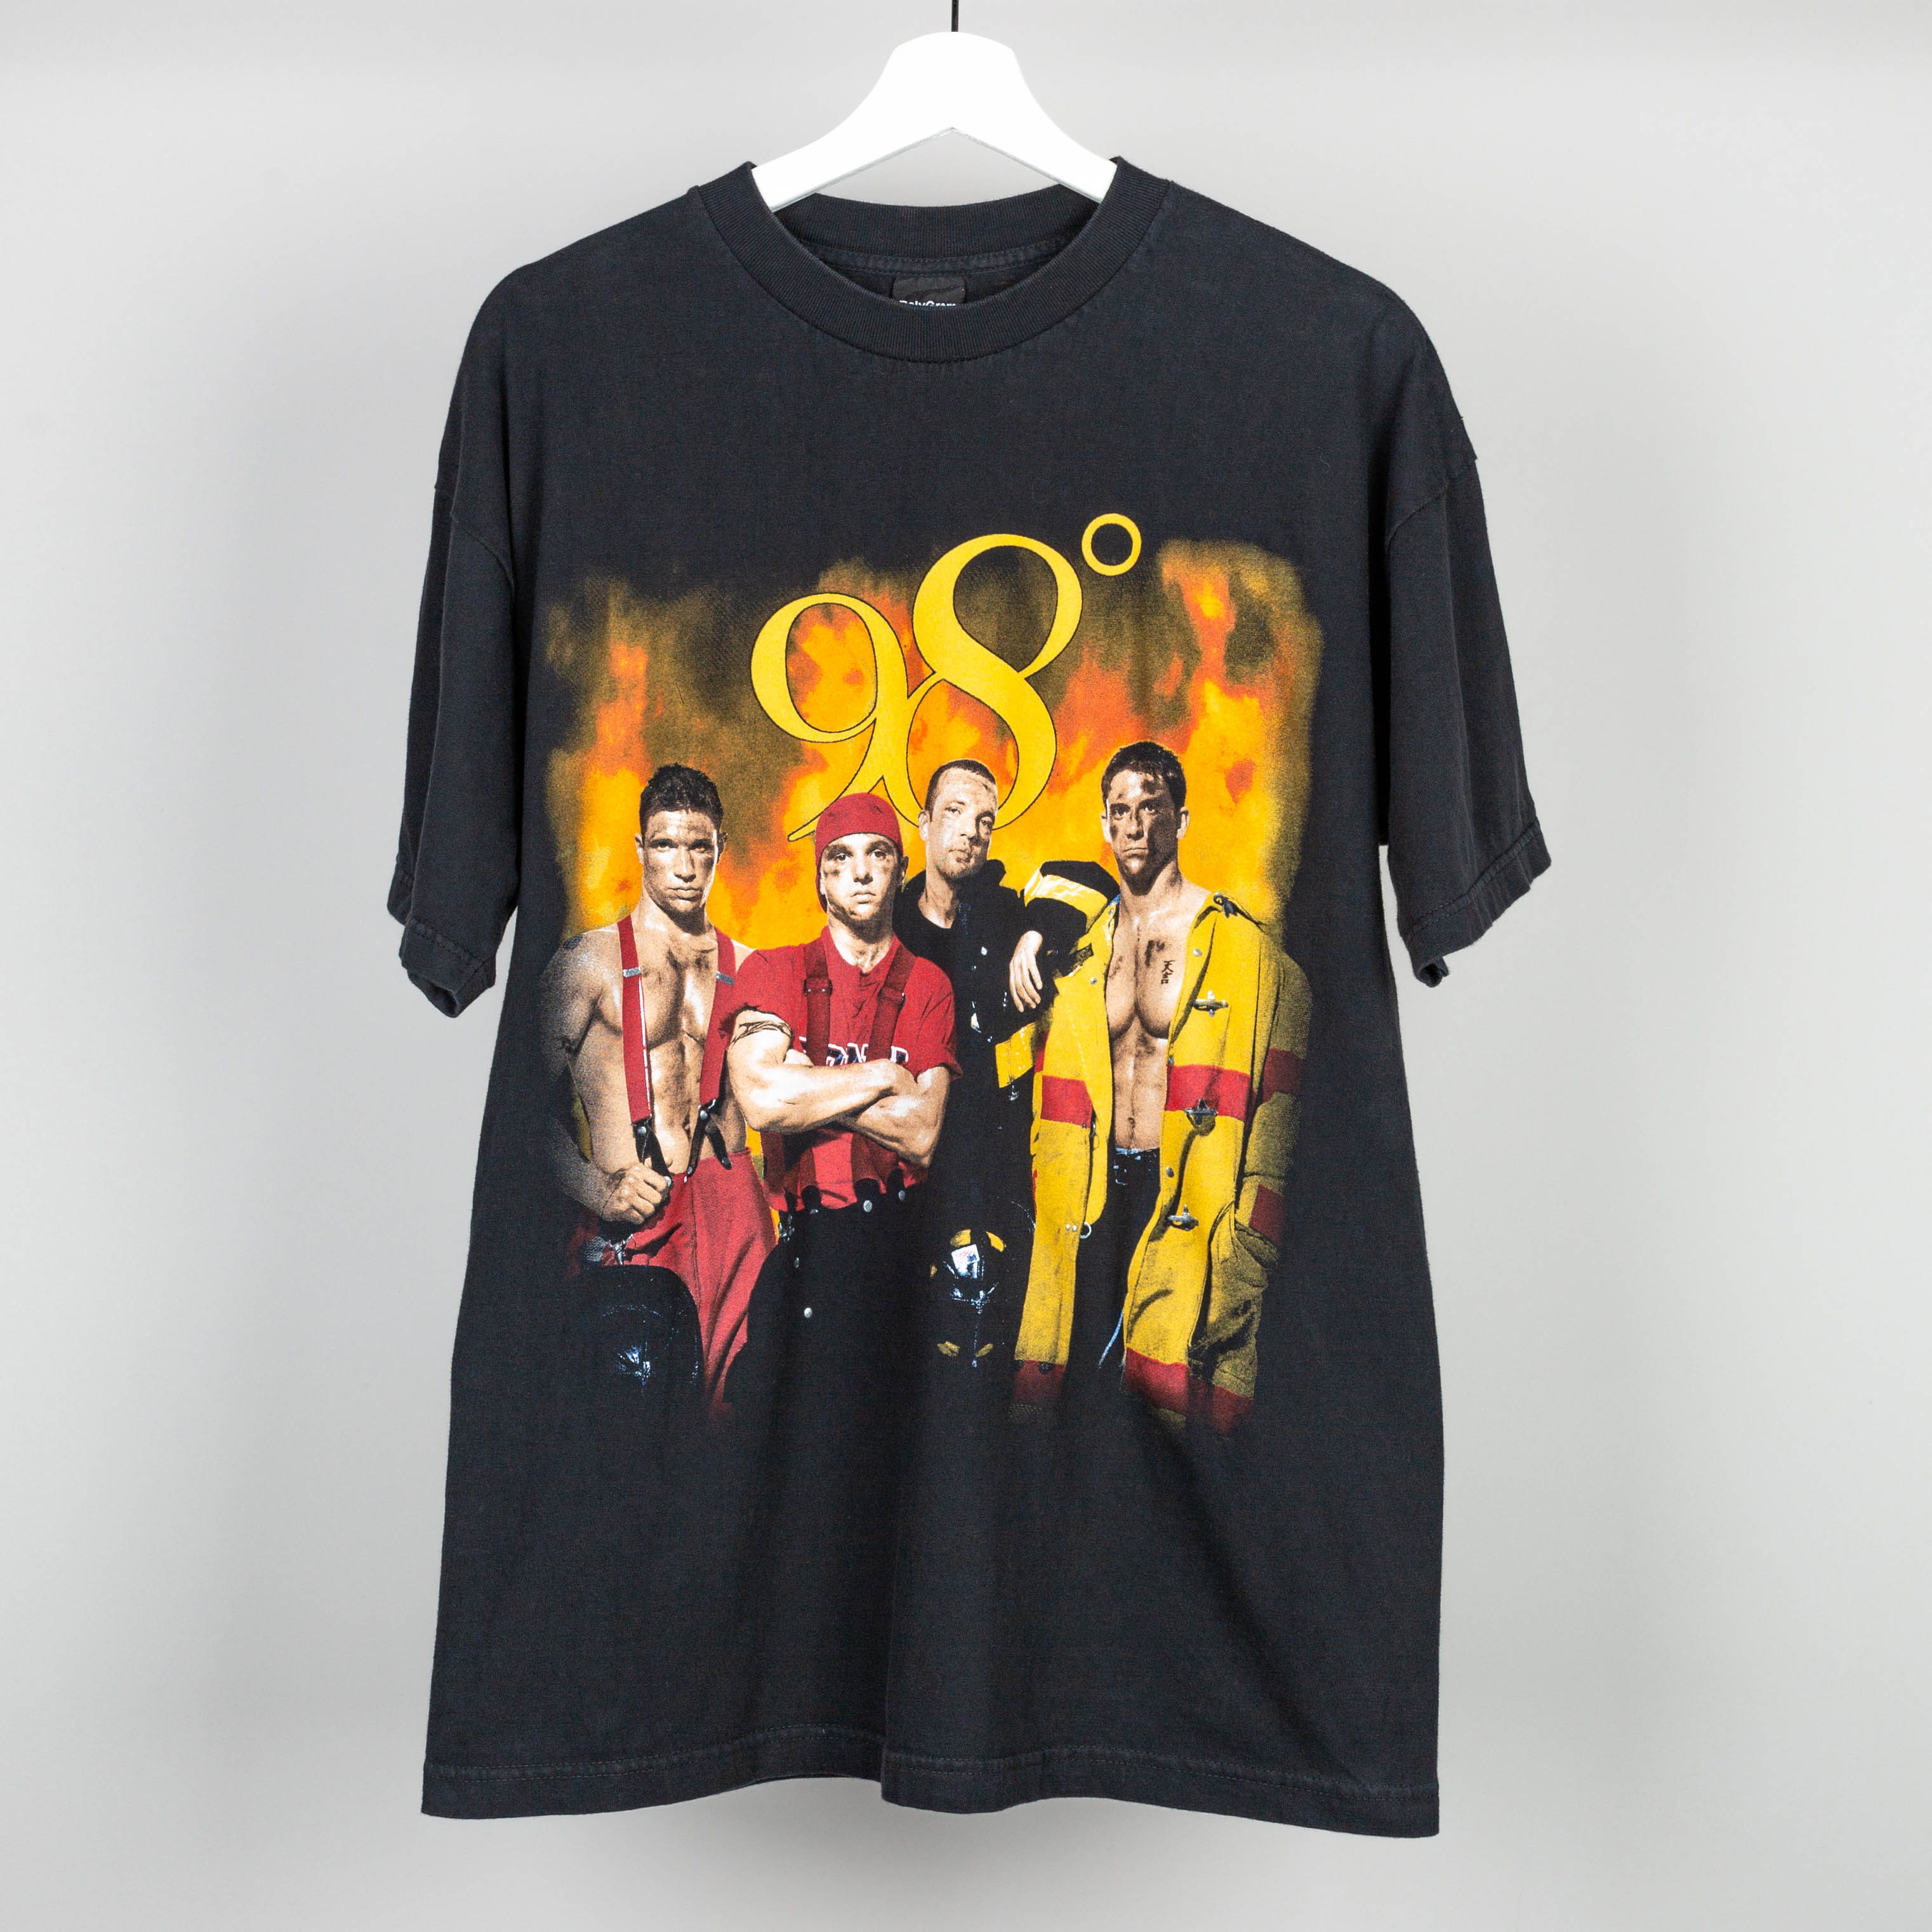 1999 98° Heat It Up Tour T-Shirt Size L